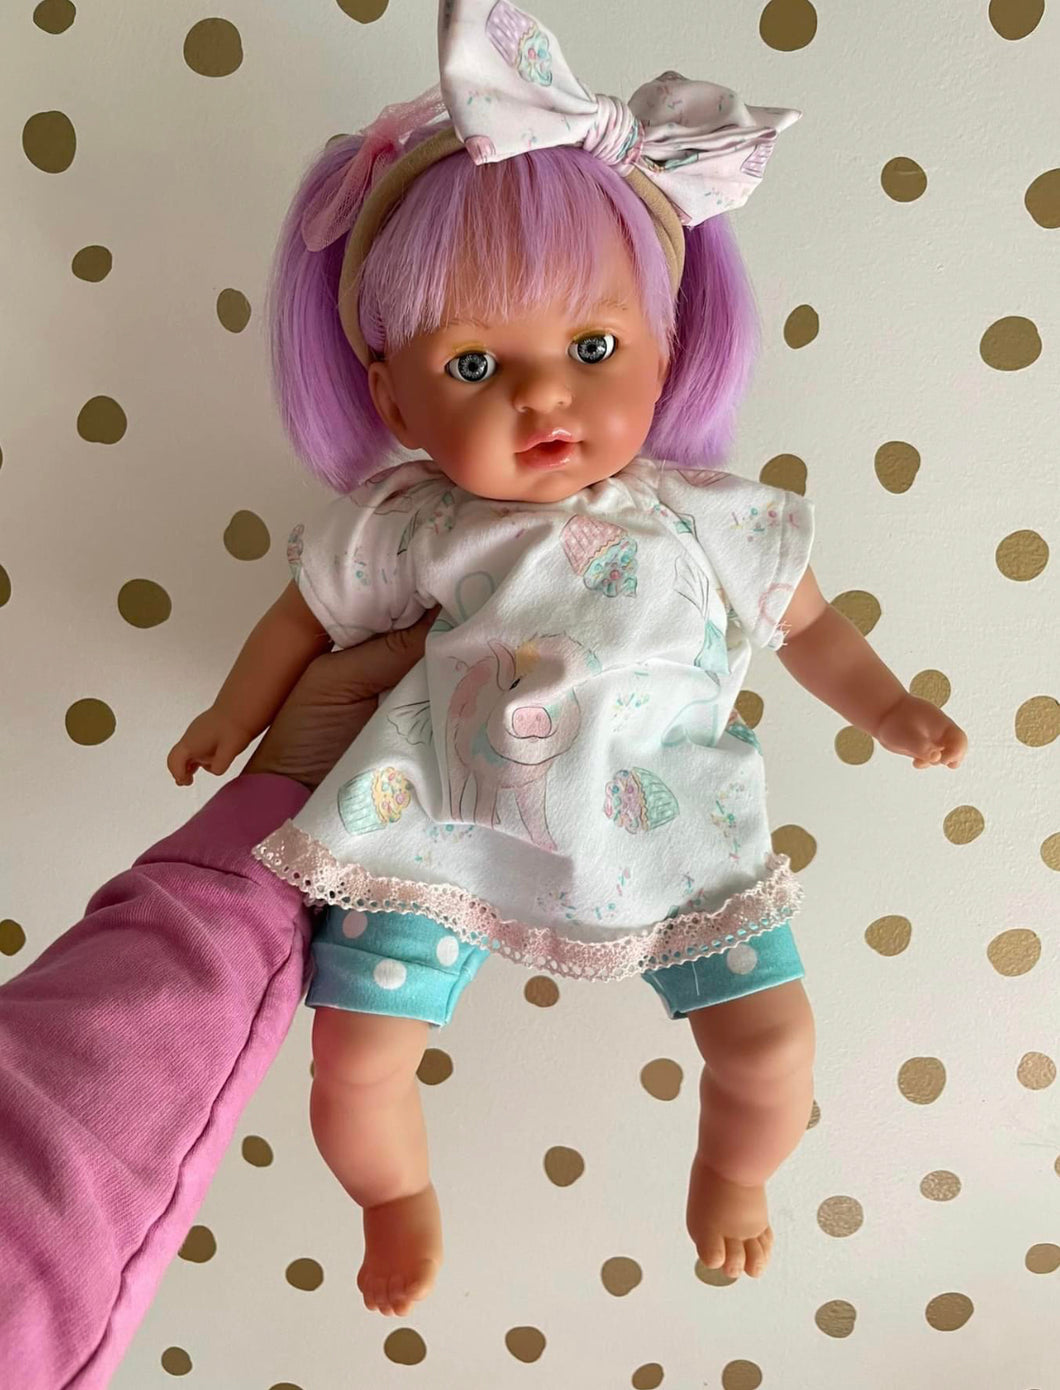 Purple hair 16” doll